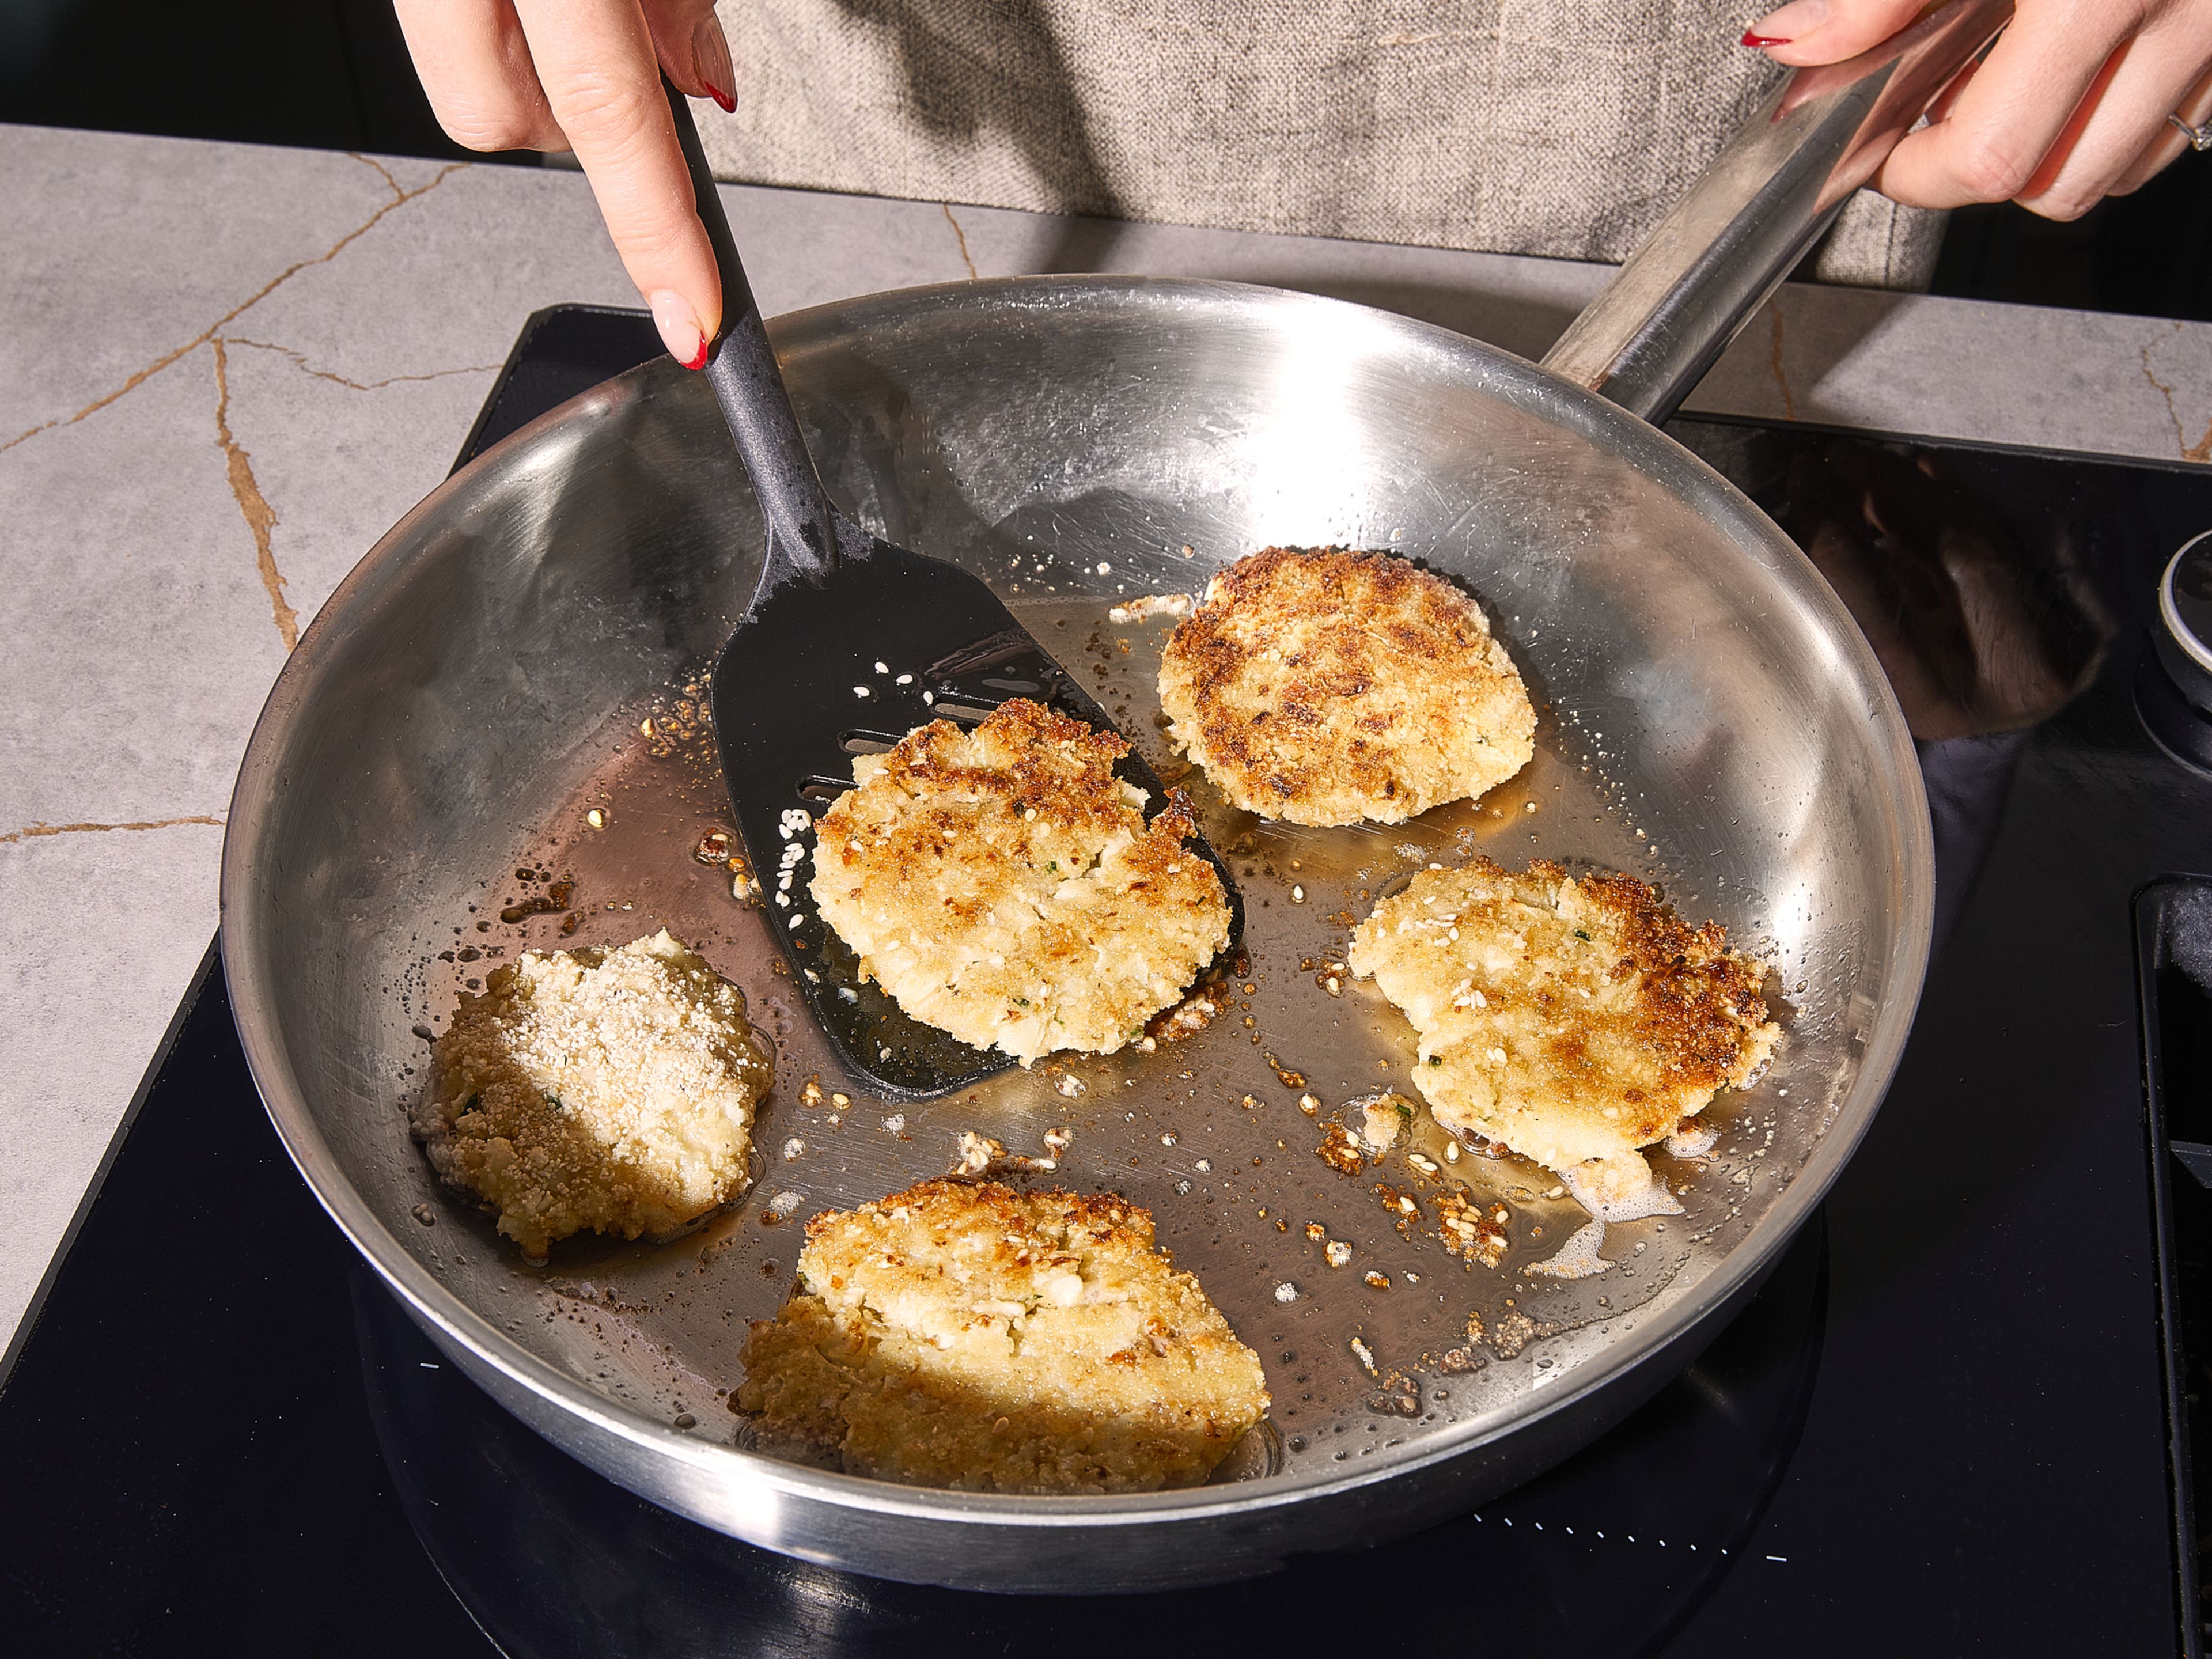 In einer großen Bratpfanne eine dünne Schicht Öl erhitzen. Jede Frikadelle ca. 4 Minuten pro Seite frittieren, bis sie goldbraun und knusprig ist. Dies in Etappen machen, damit die Pfanne nicht zu voll wird. Sofort mit Gurkensalat und Quark-Dip servieren.